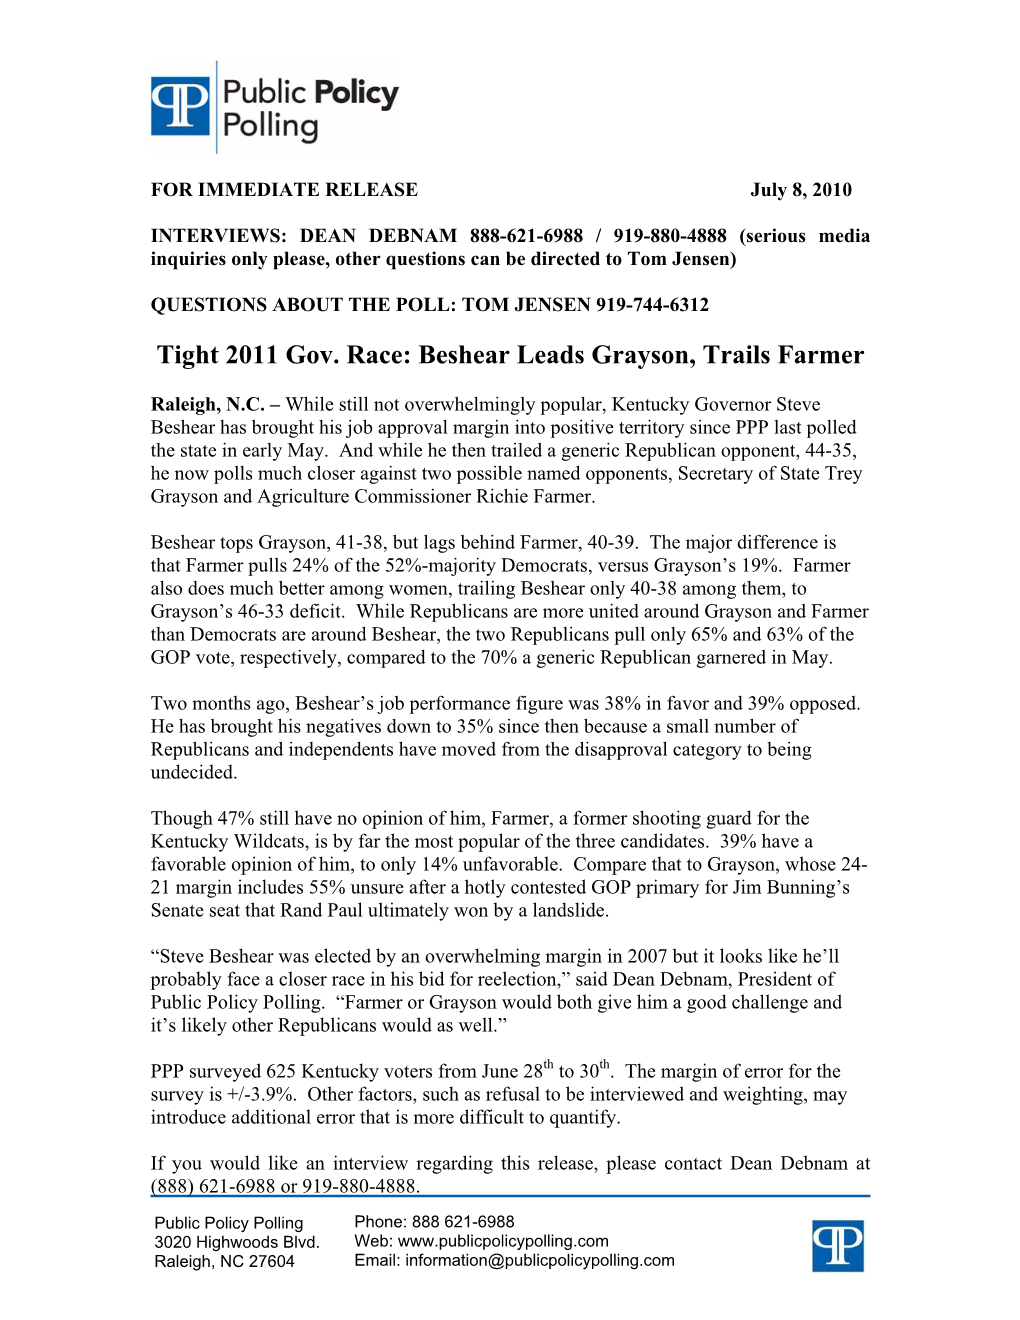 Tight 2011 Gov. Race: Beshear Leads Grayson, Trails Farmer